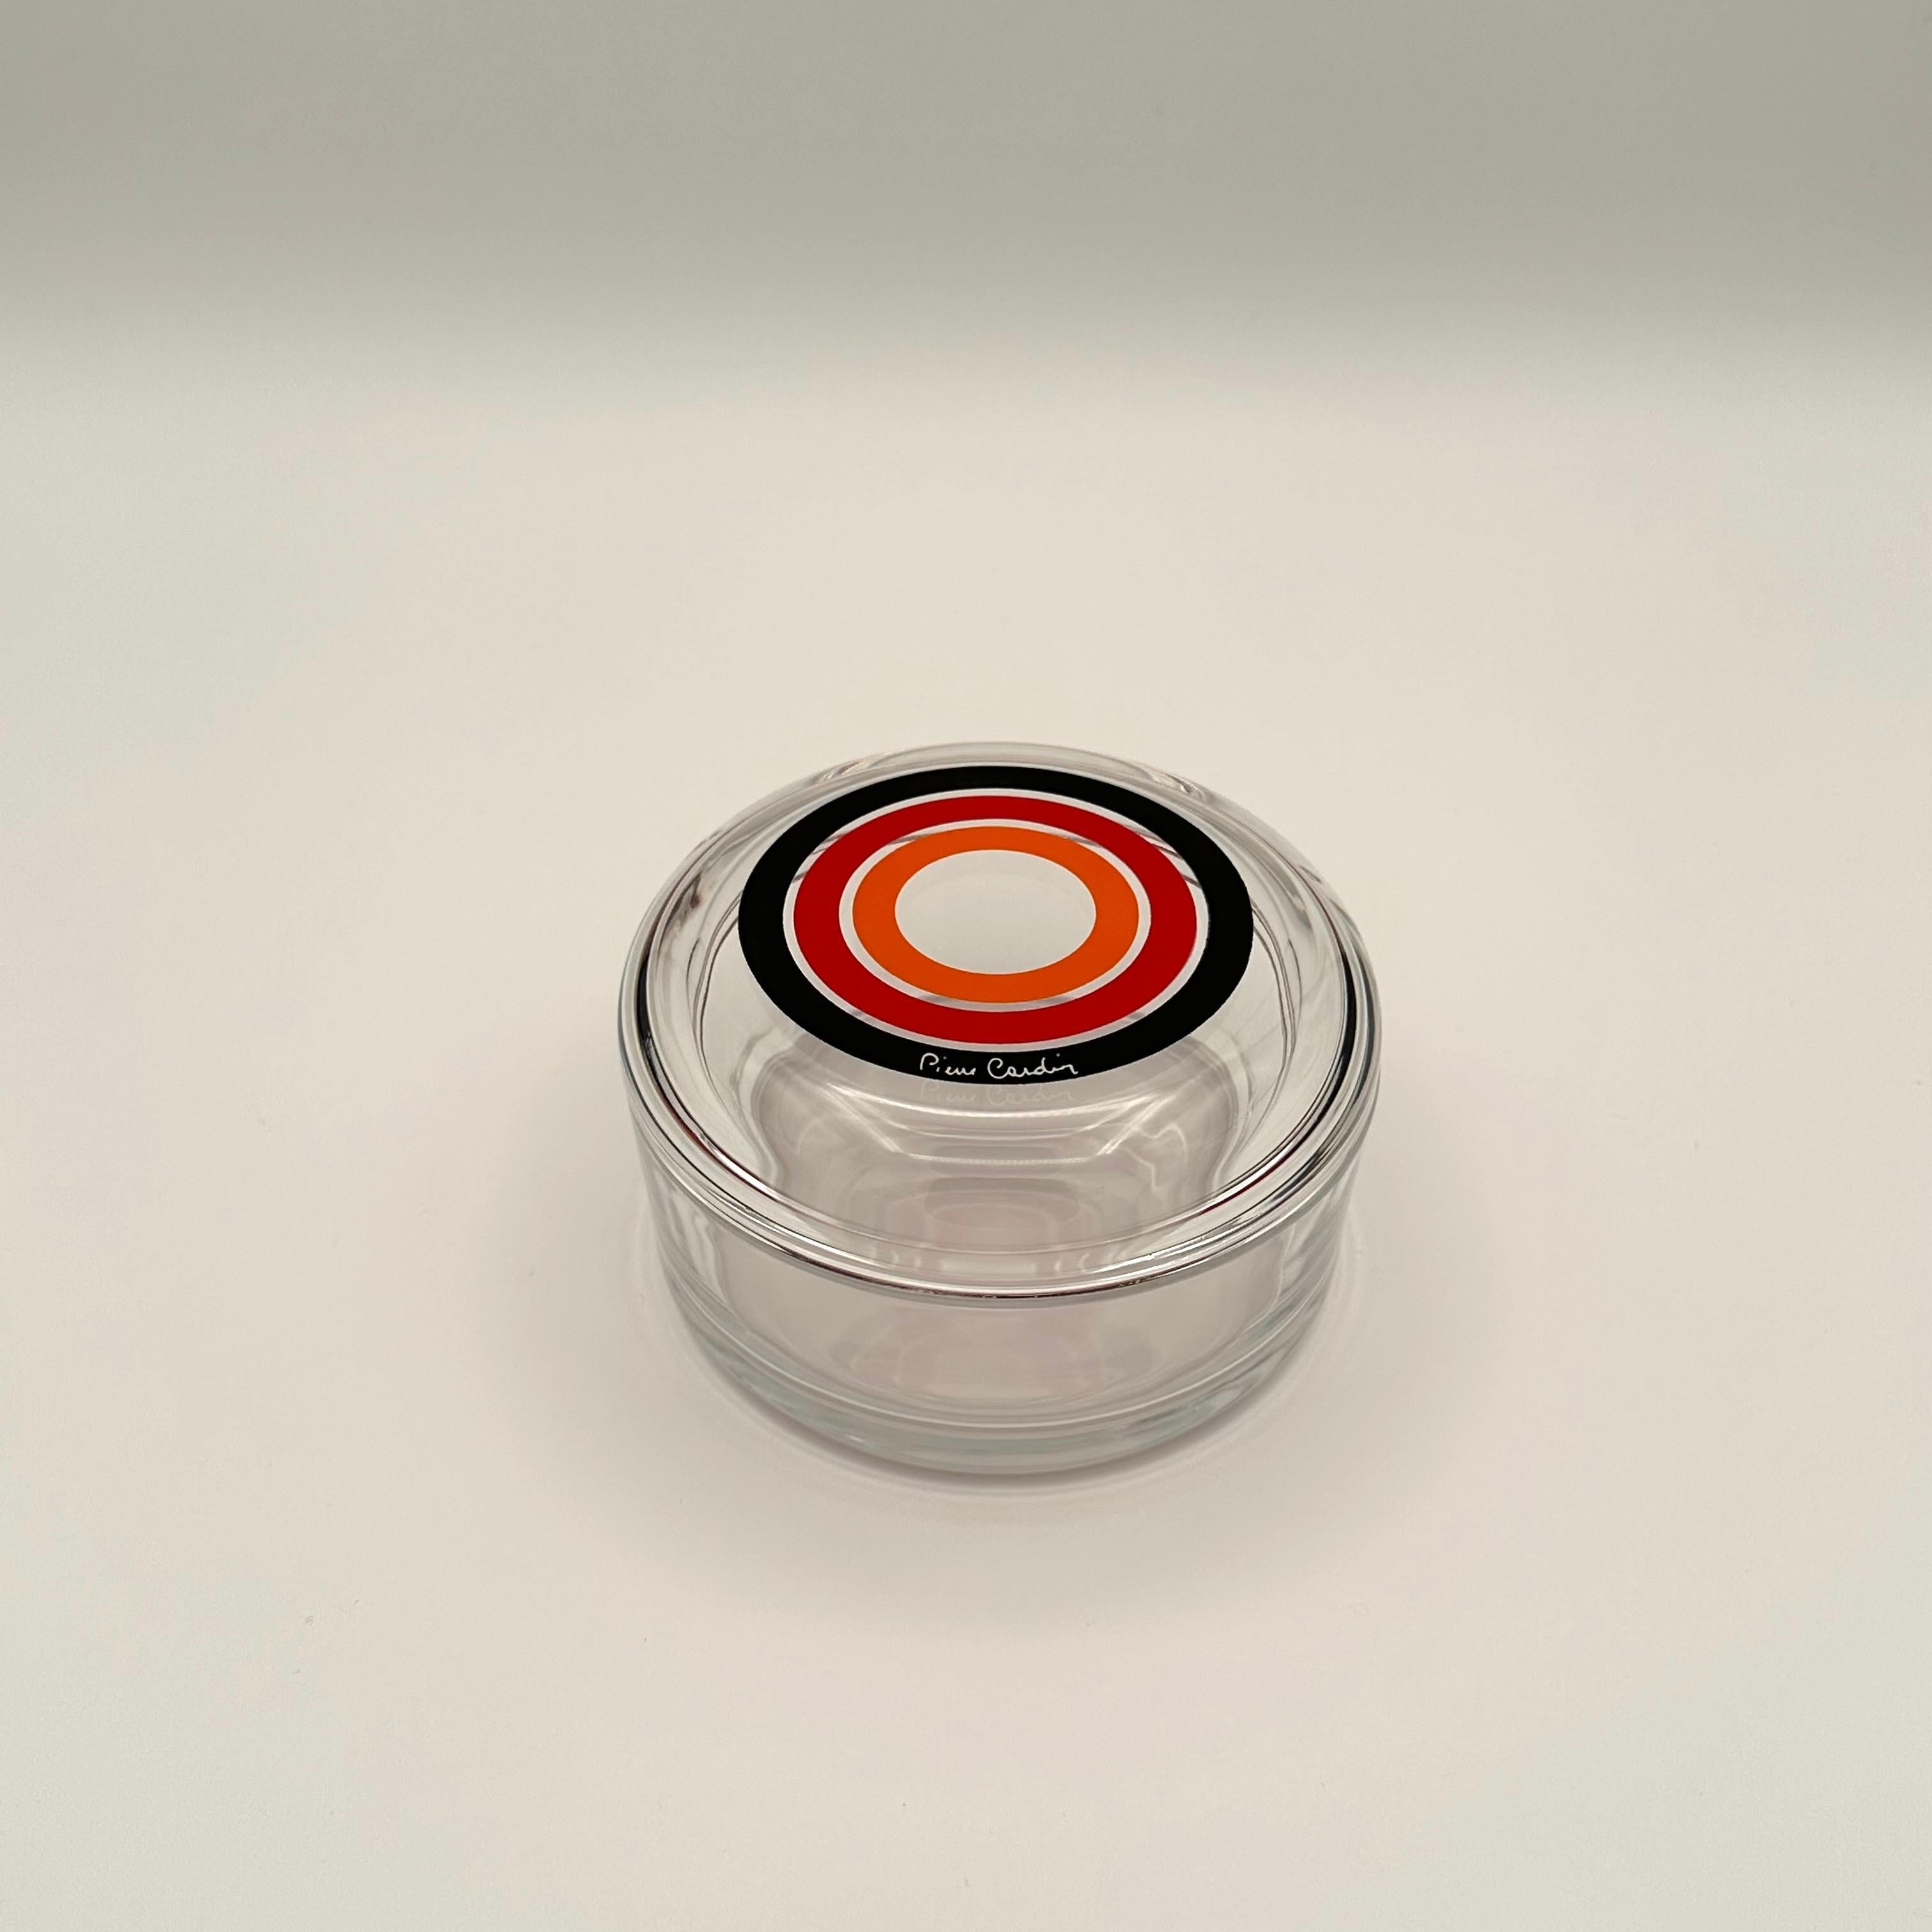 Vintage Pierre Cardin für Sasaki Glasschale in Rot, Orange und Schwarz. Space Age Zielscheibe mit konzentrischen schwarzen, roten und orangefarbenen Kreisen. In den schwarzen Kreis ist 